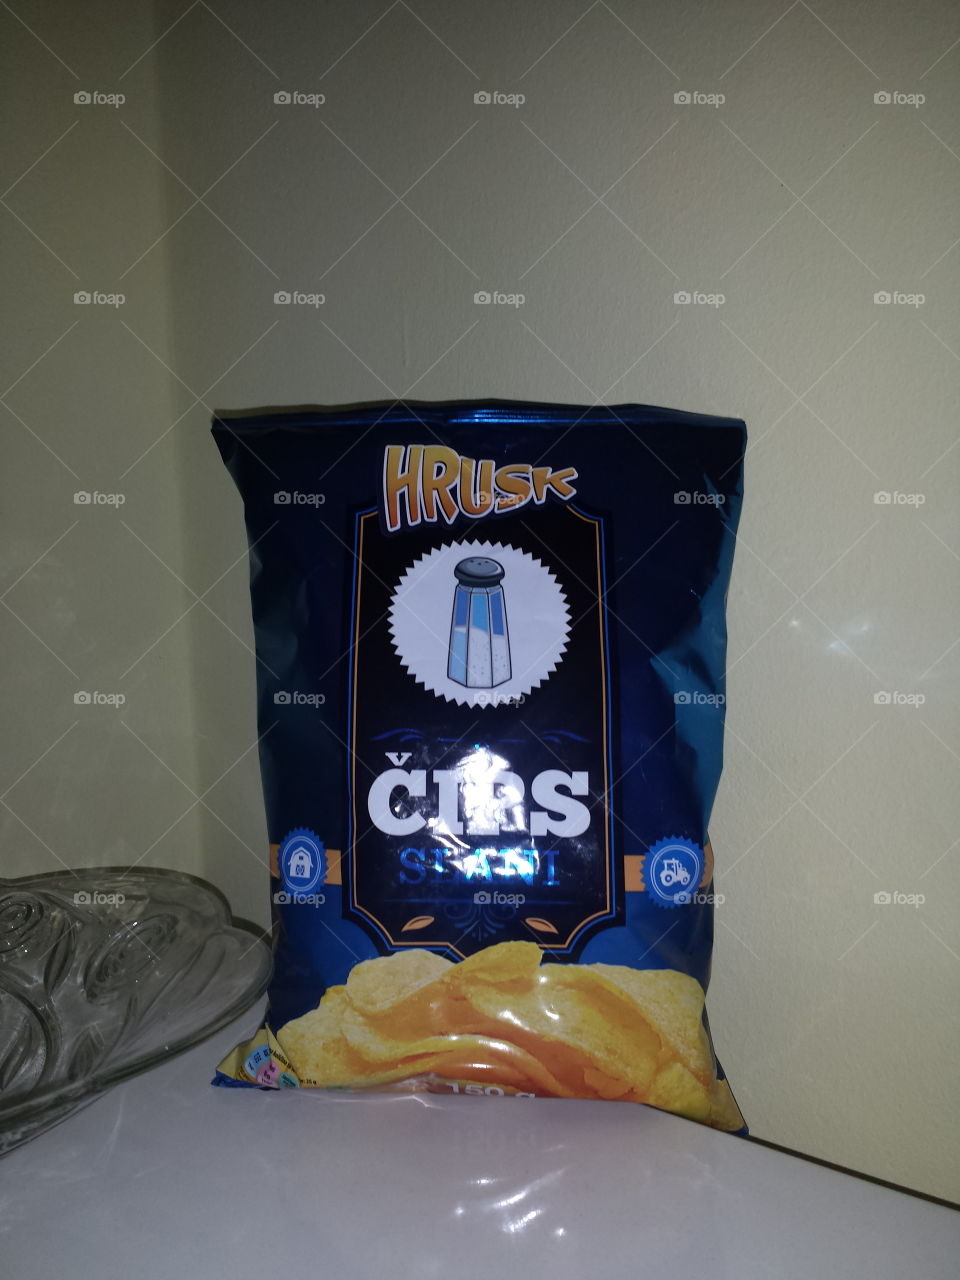 Chips Hrusk Brand